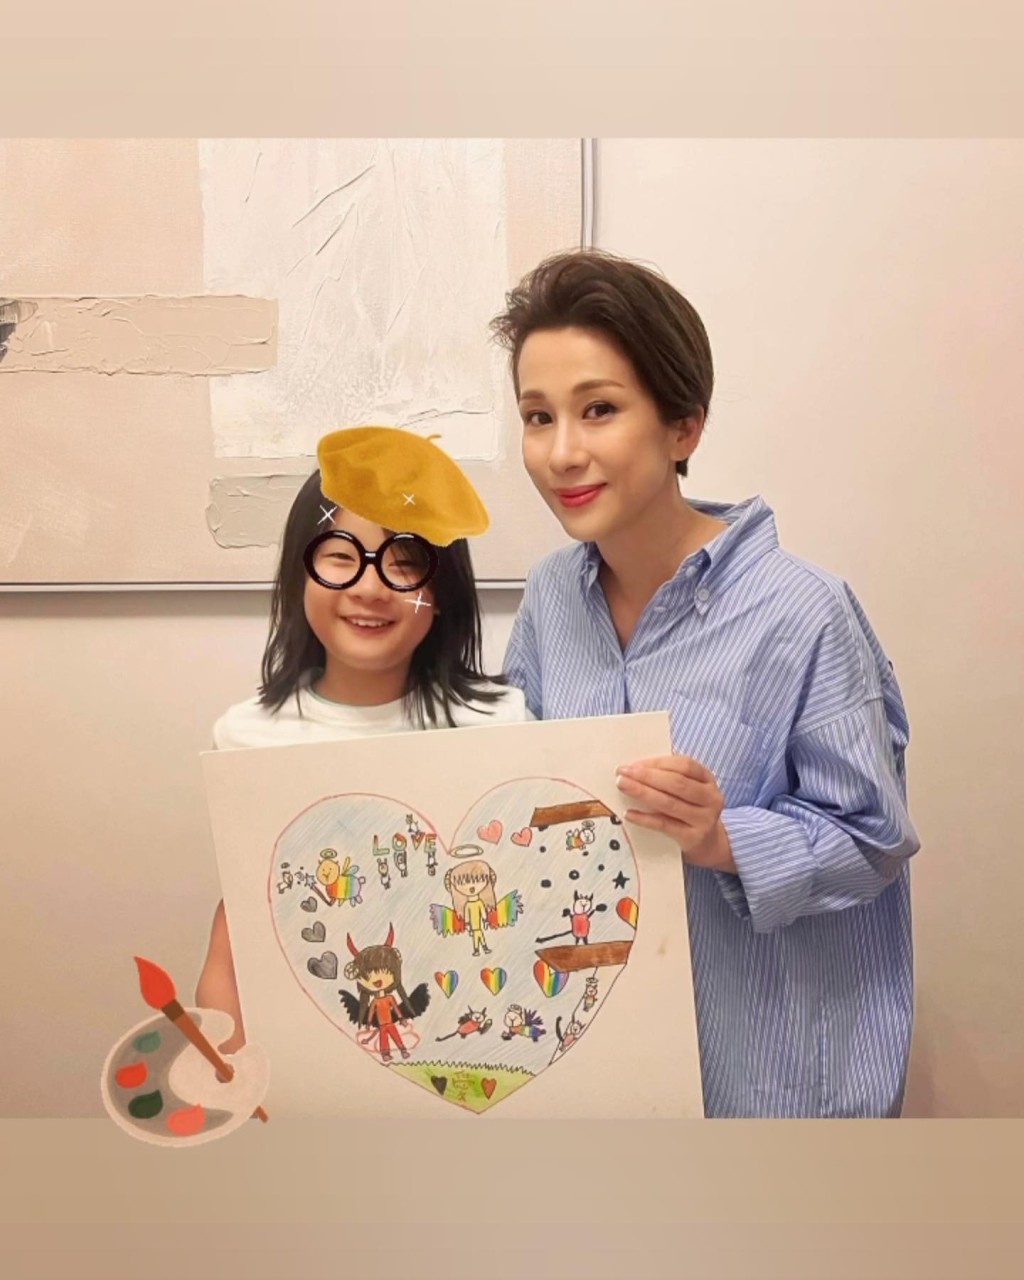 文颂娴展示囡囡的画作。